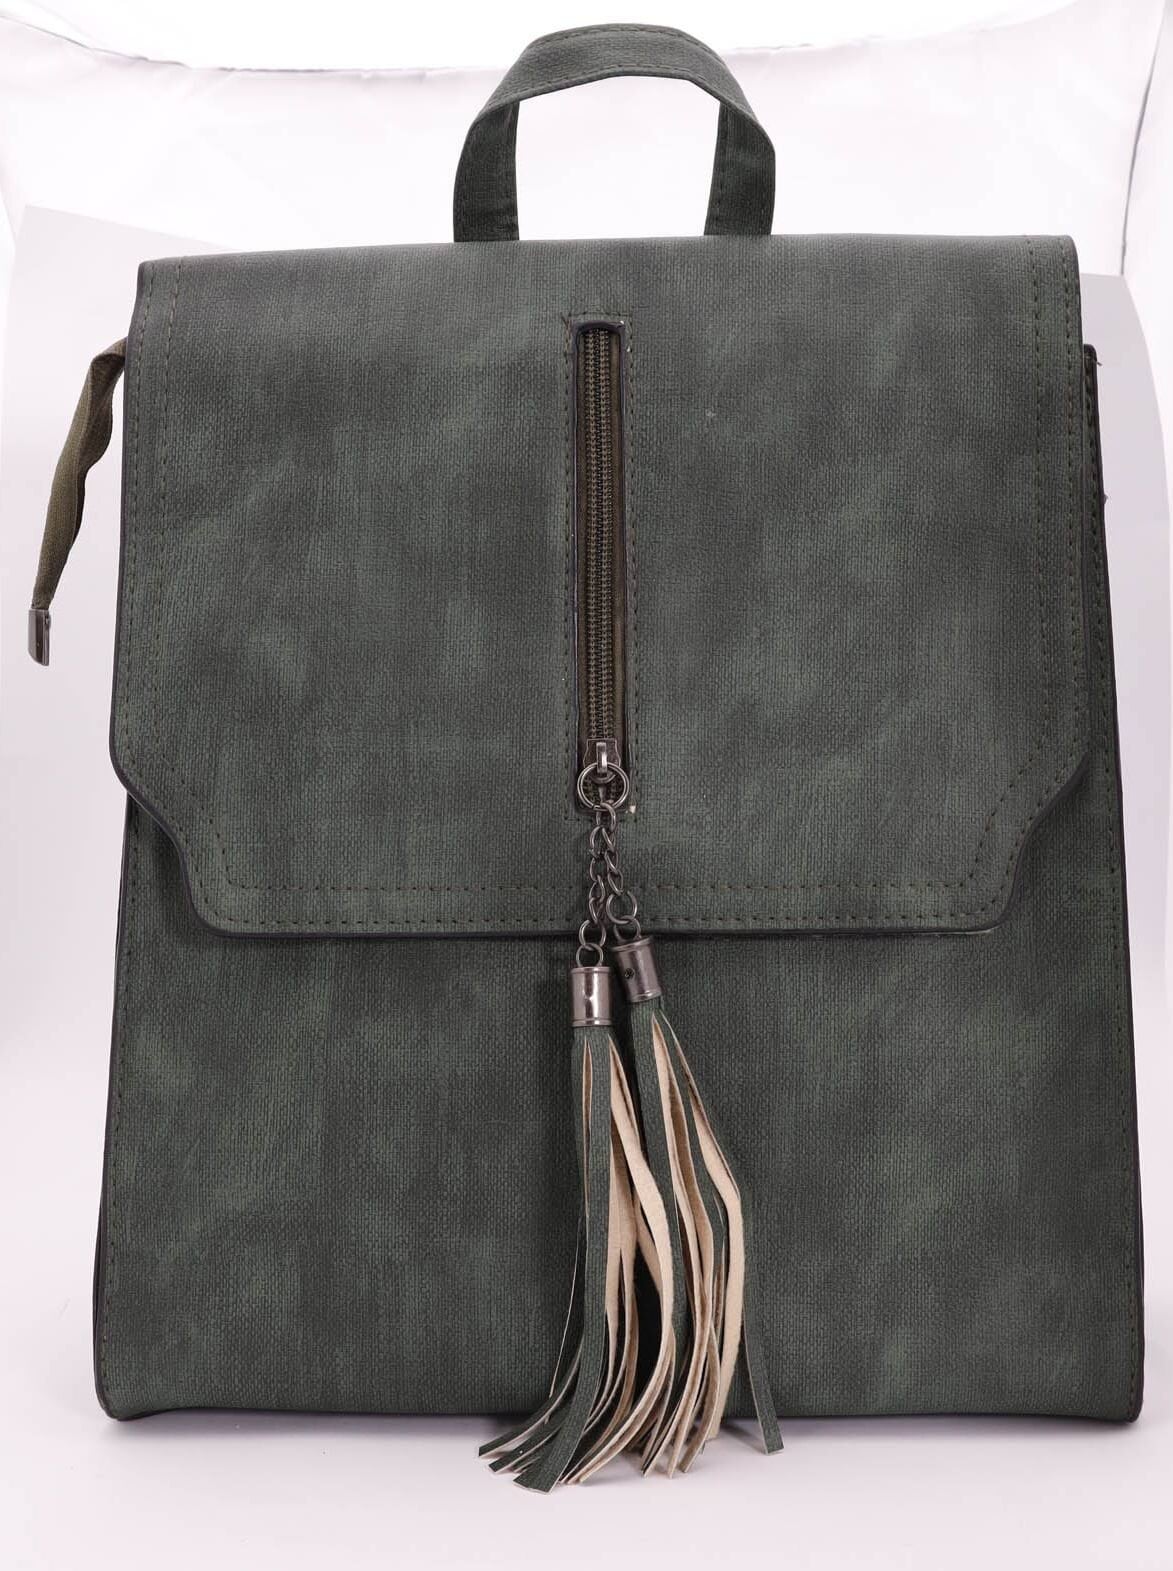 Рюкзак женский SKY эко-кожа, цыет: зеленый, голубой, 1 шт